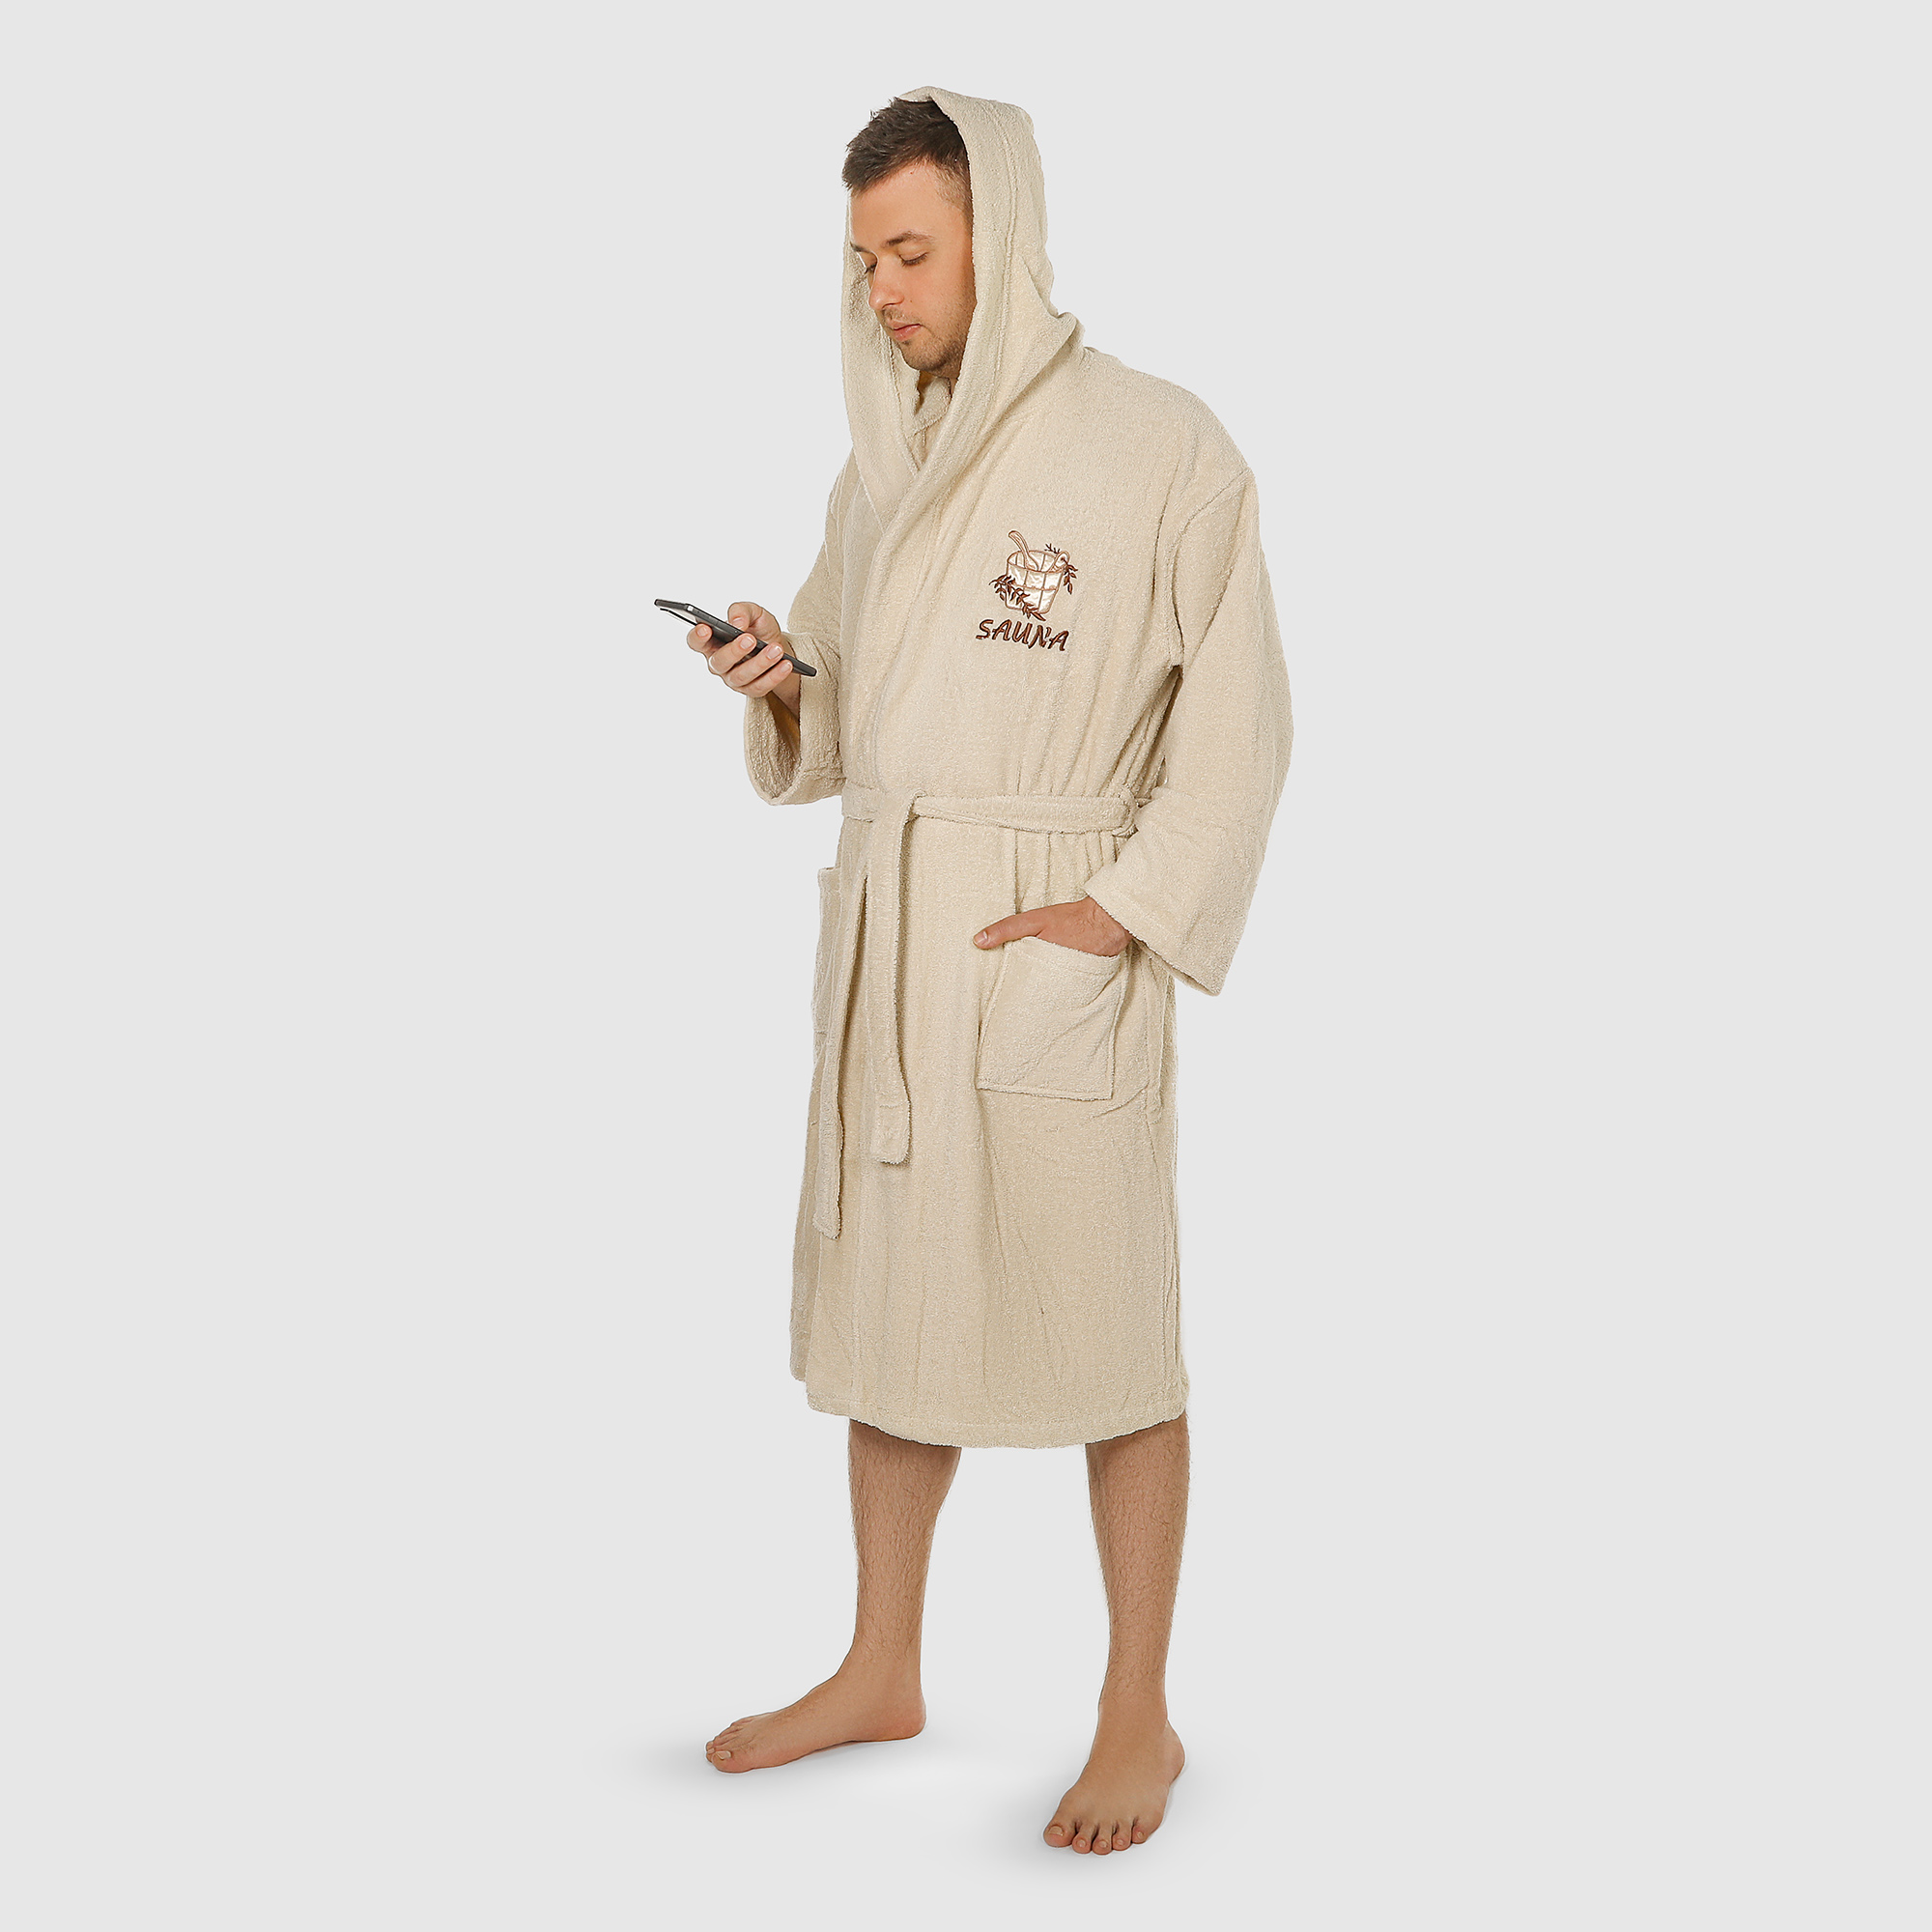 Халат мужской Asil Sauna brown XL махровый с капюшоном халат мужской asil sauna brown xl вафельный с капюшоном